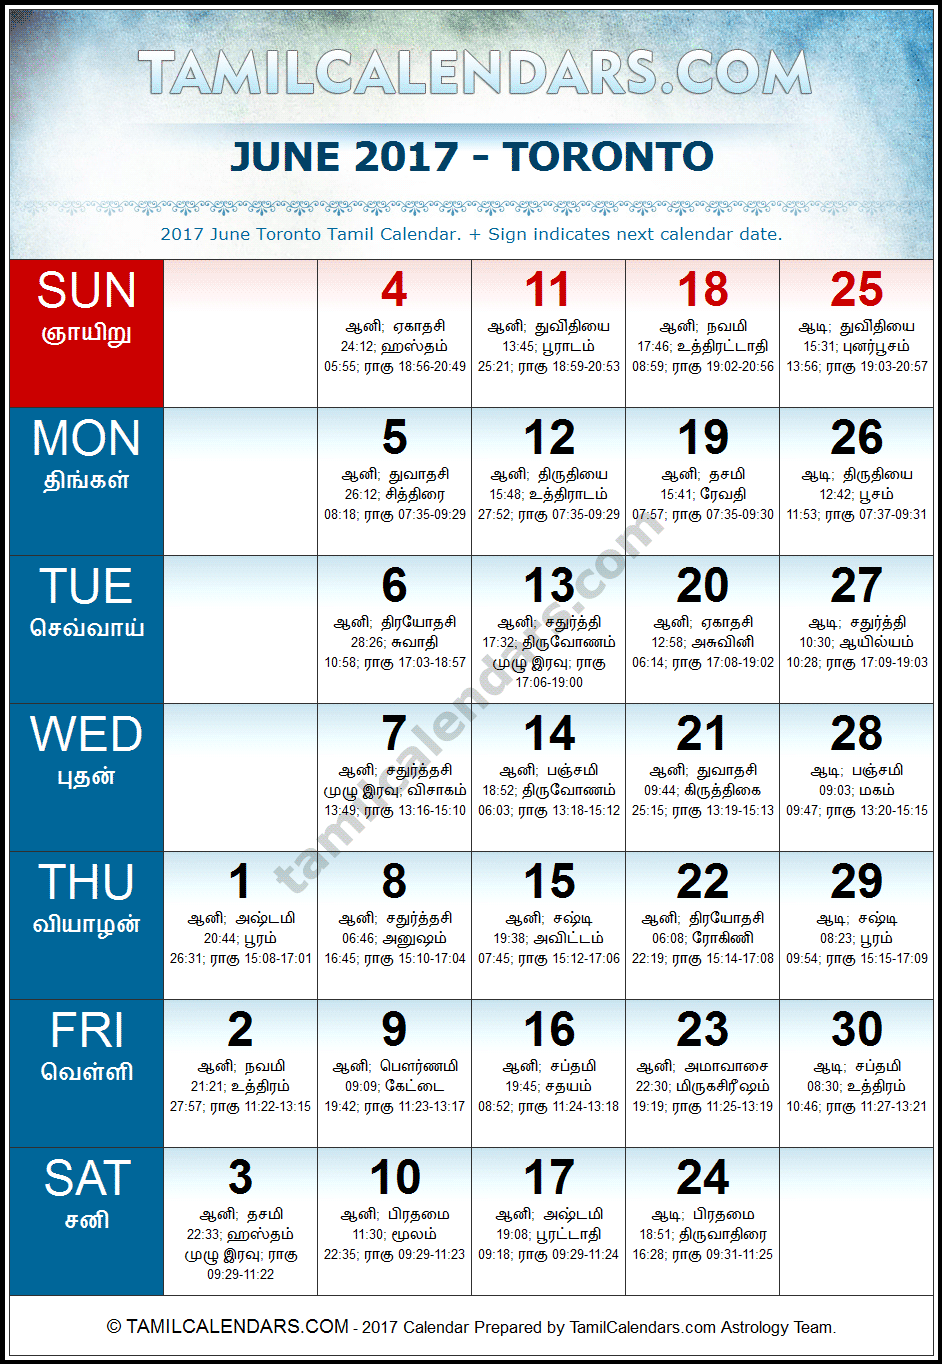 June 2017 Tamil Calendar for Toronto, Canada